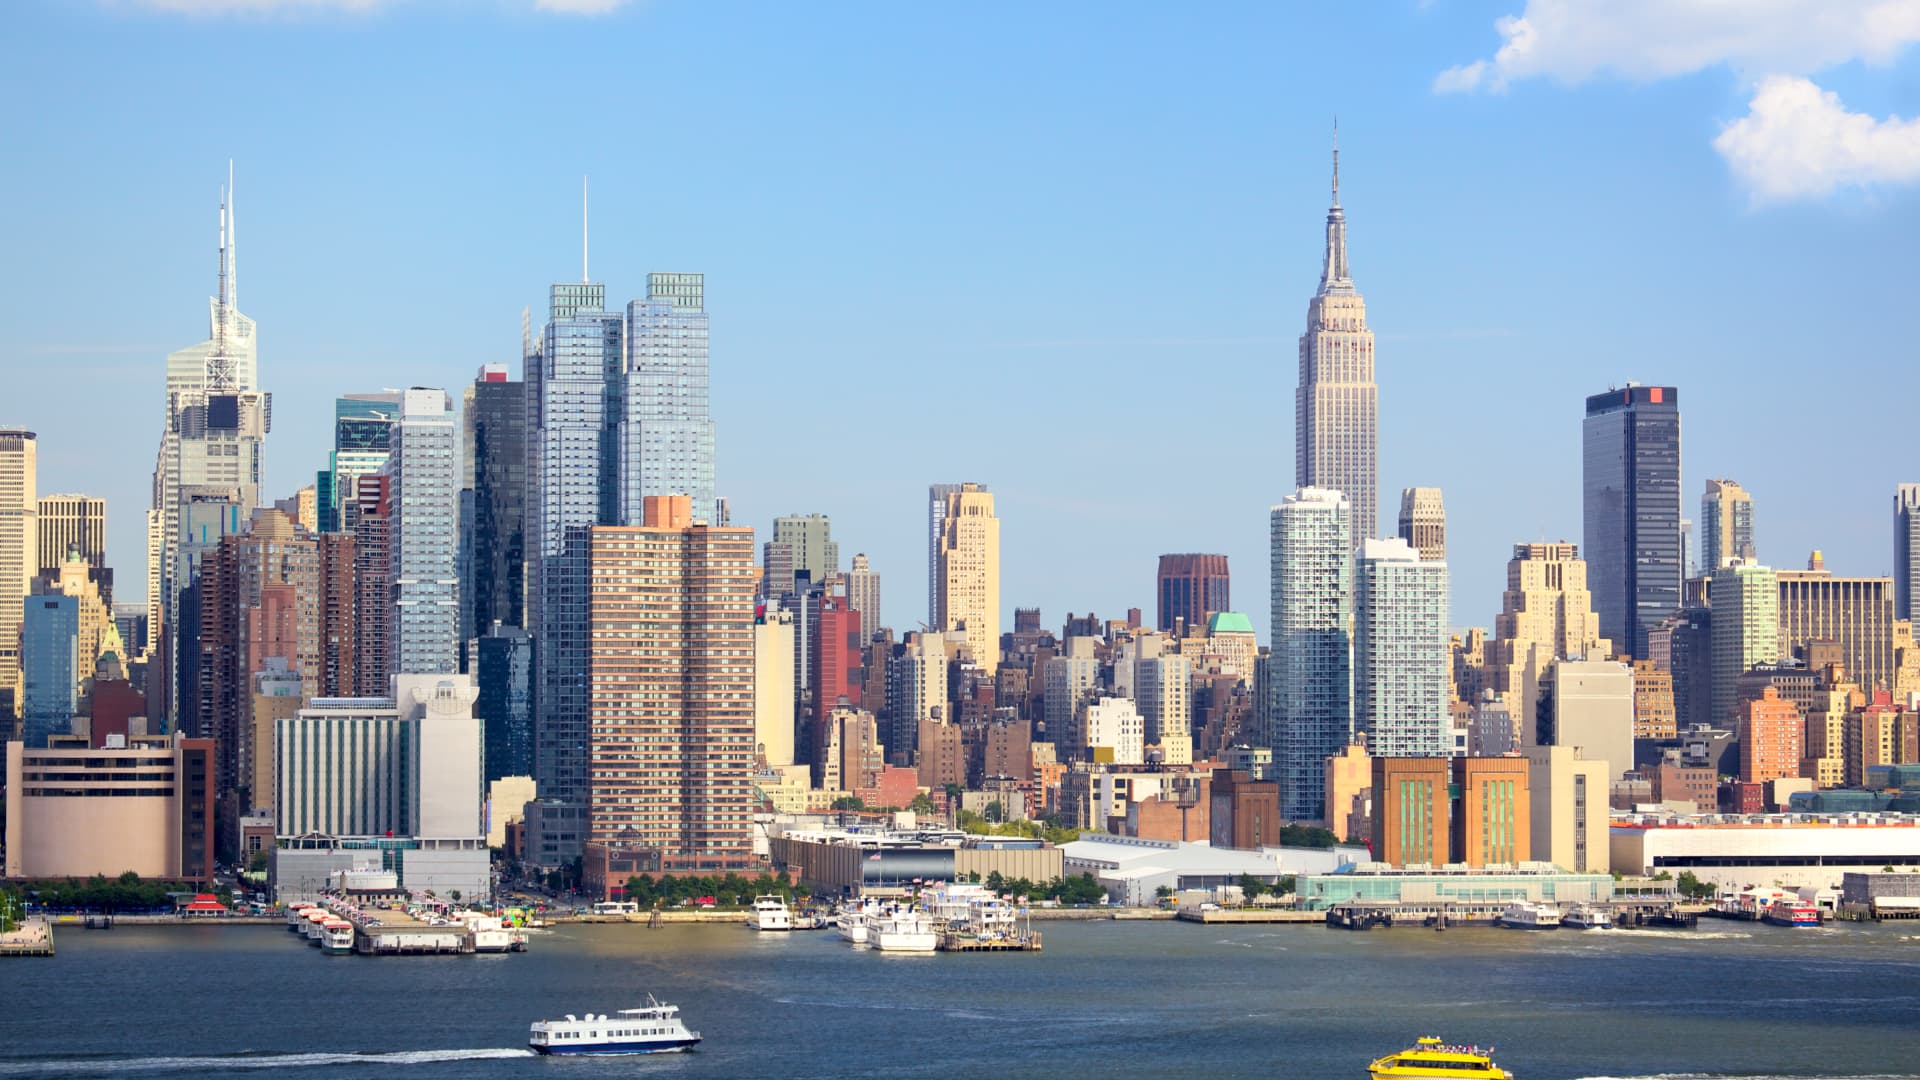 La ciudad de Nueva York es el destino de viaje de verano número 1 en tendencia en los EE. UU. para 2023, según American Express Travel.